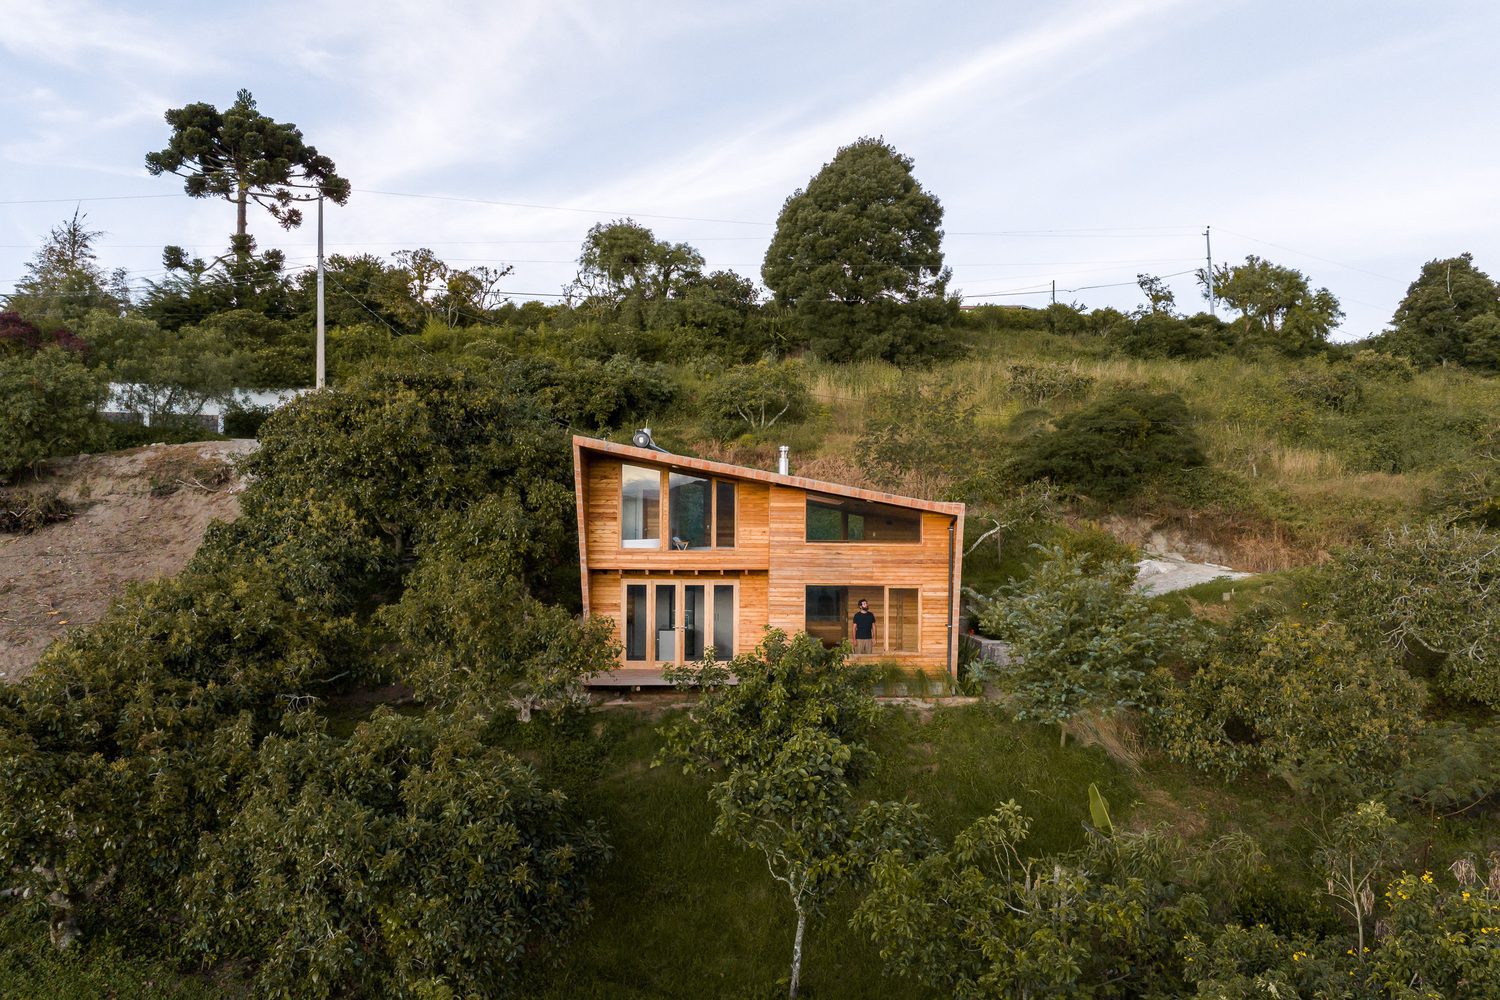 طراحی خانه لاکچری در محیط روستایی - تحریریه آس دیزاین